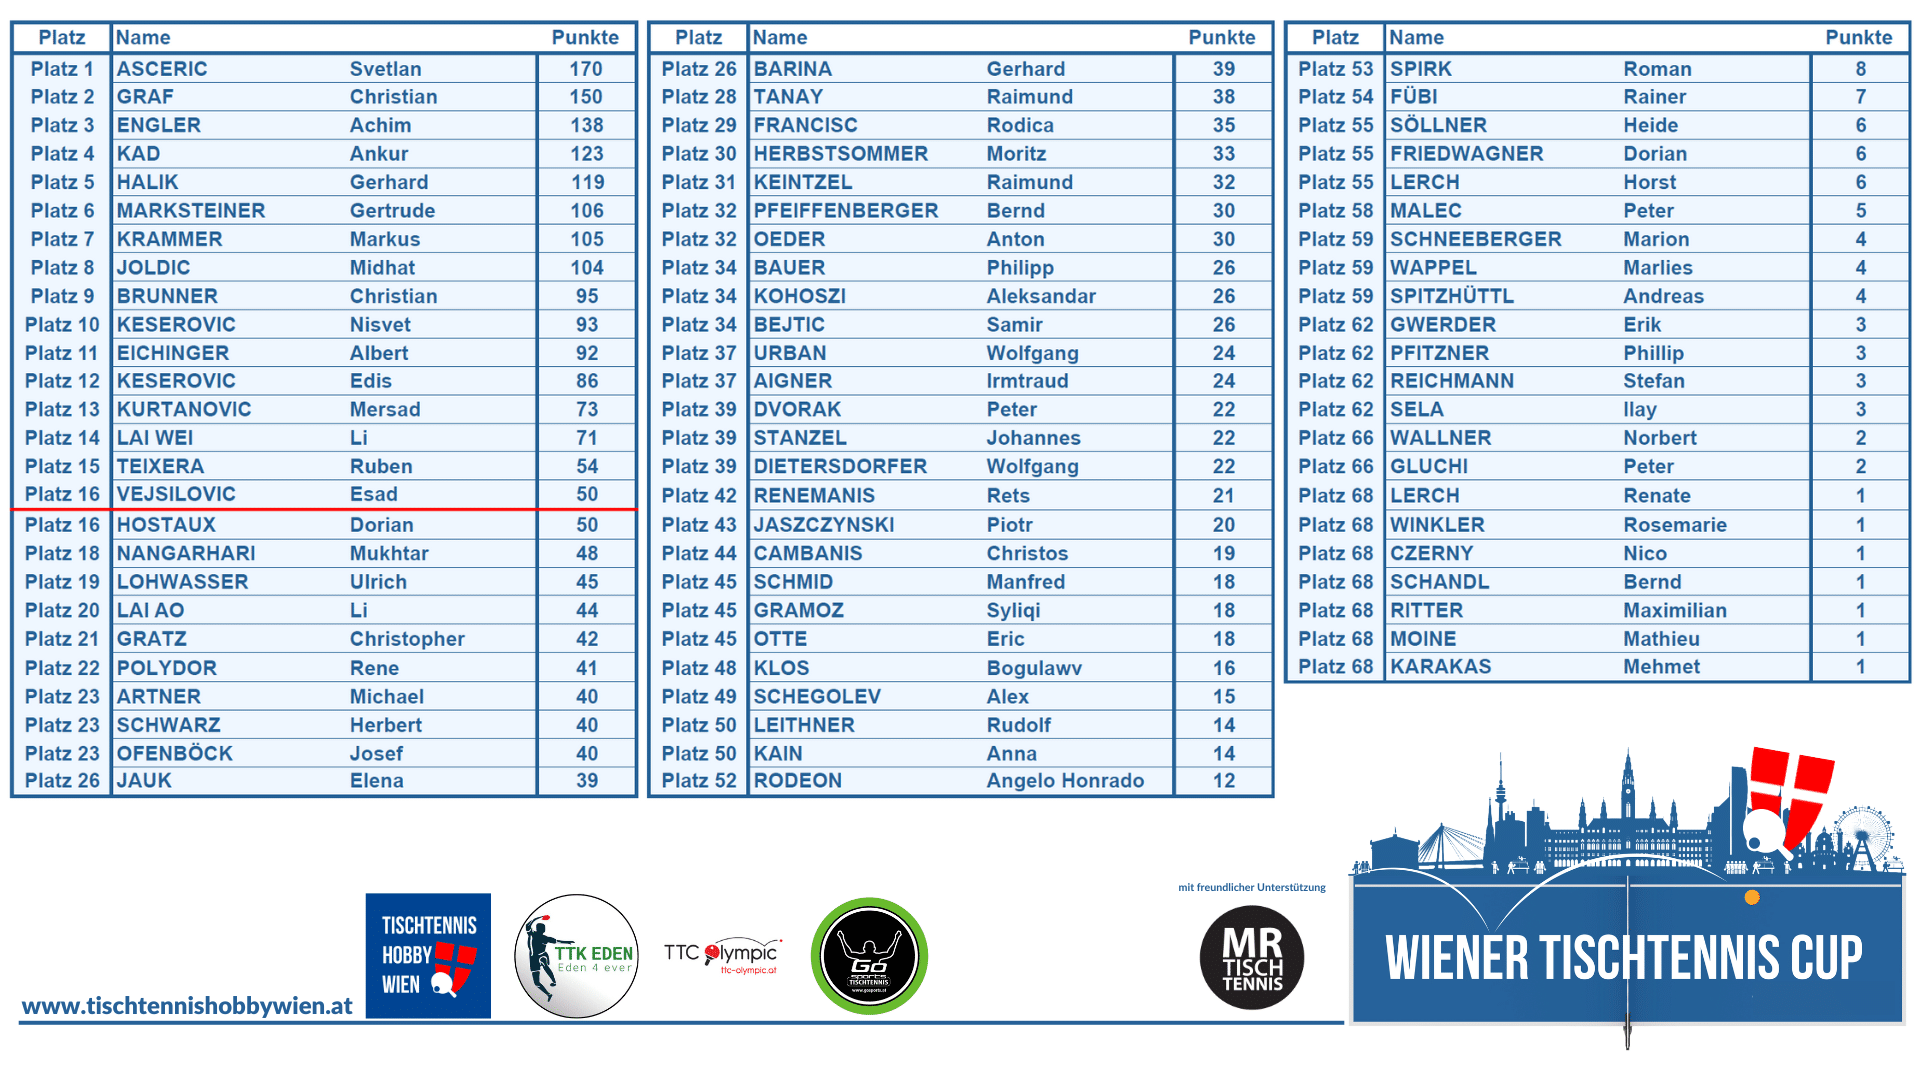 Das Gesamtresultat des Wiener Tischtennis Cup 2024. Die besten 16 platzierten Spieler*innen spielen um den Cup am Ende dieses Jahres.